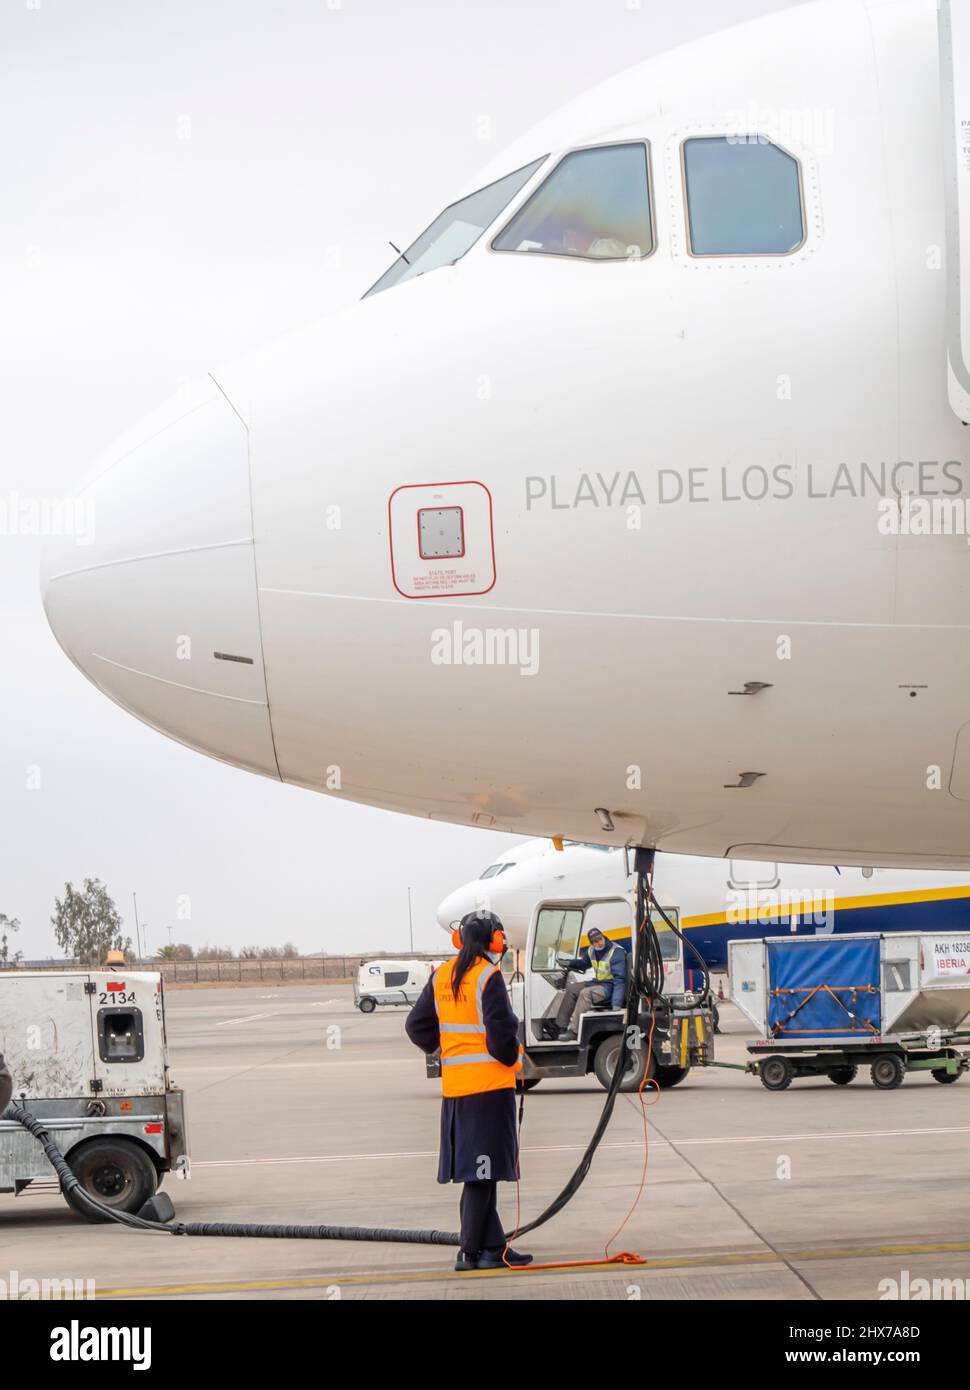 Un'impiegato di lavoro femminile che si rifornisce delle compagnie aeree Iberia Airbus A320 velivolo a doppio motore a reazione nell'aeroporto di Marrakech Menara, Marocco, Nord Africa Foto Stock